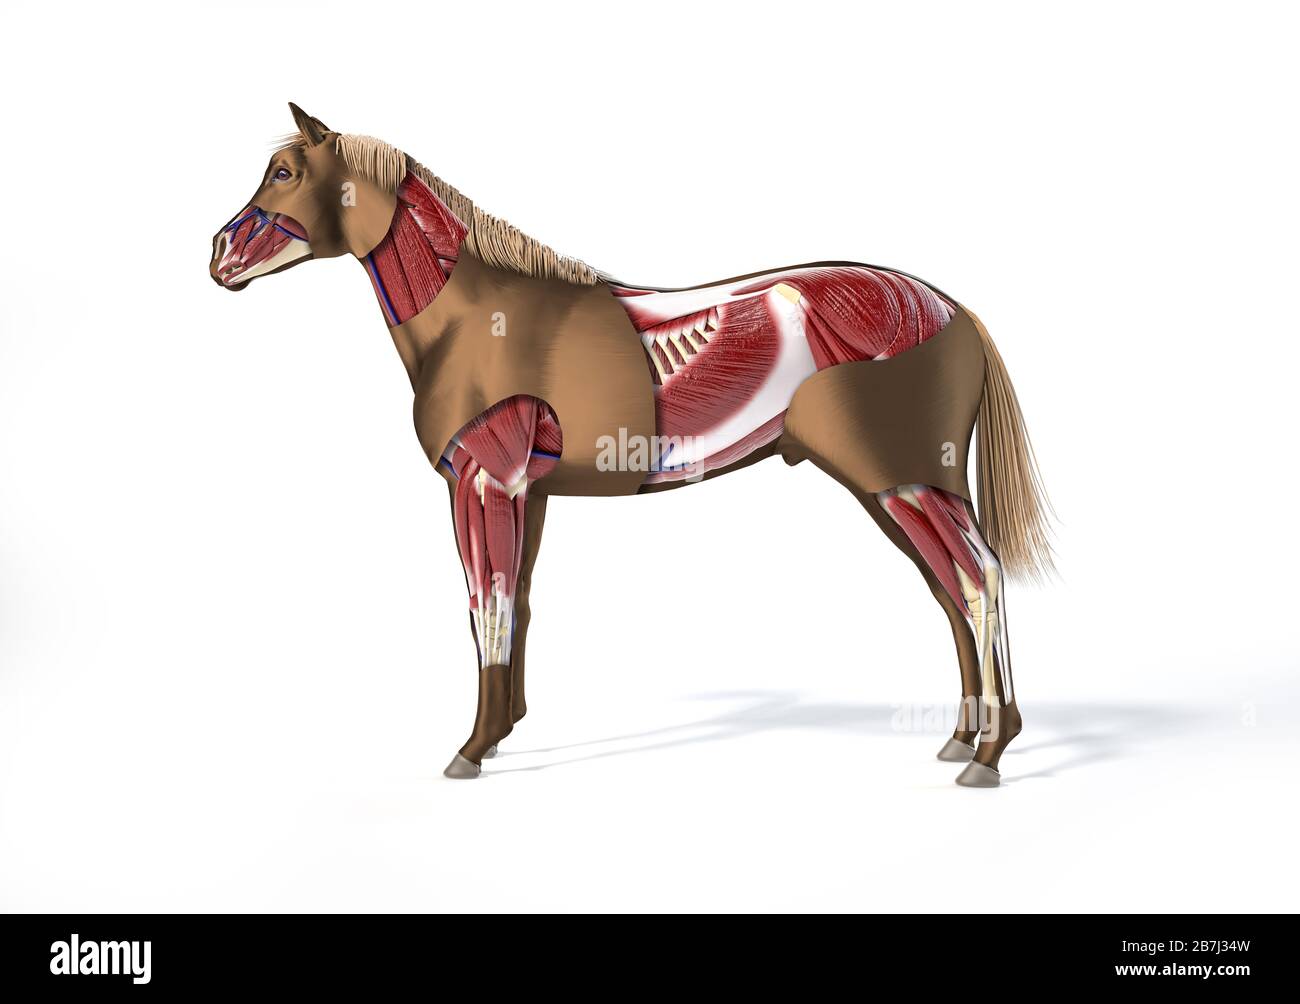 Anatomie du cheval. Système musculaire avec effet cutaway. Vue latérale sur fond blanc. Chemin d'écrêtage inclus. Banque D'Images